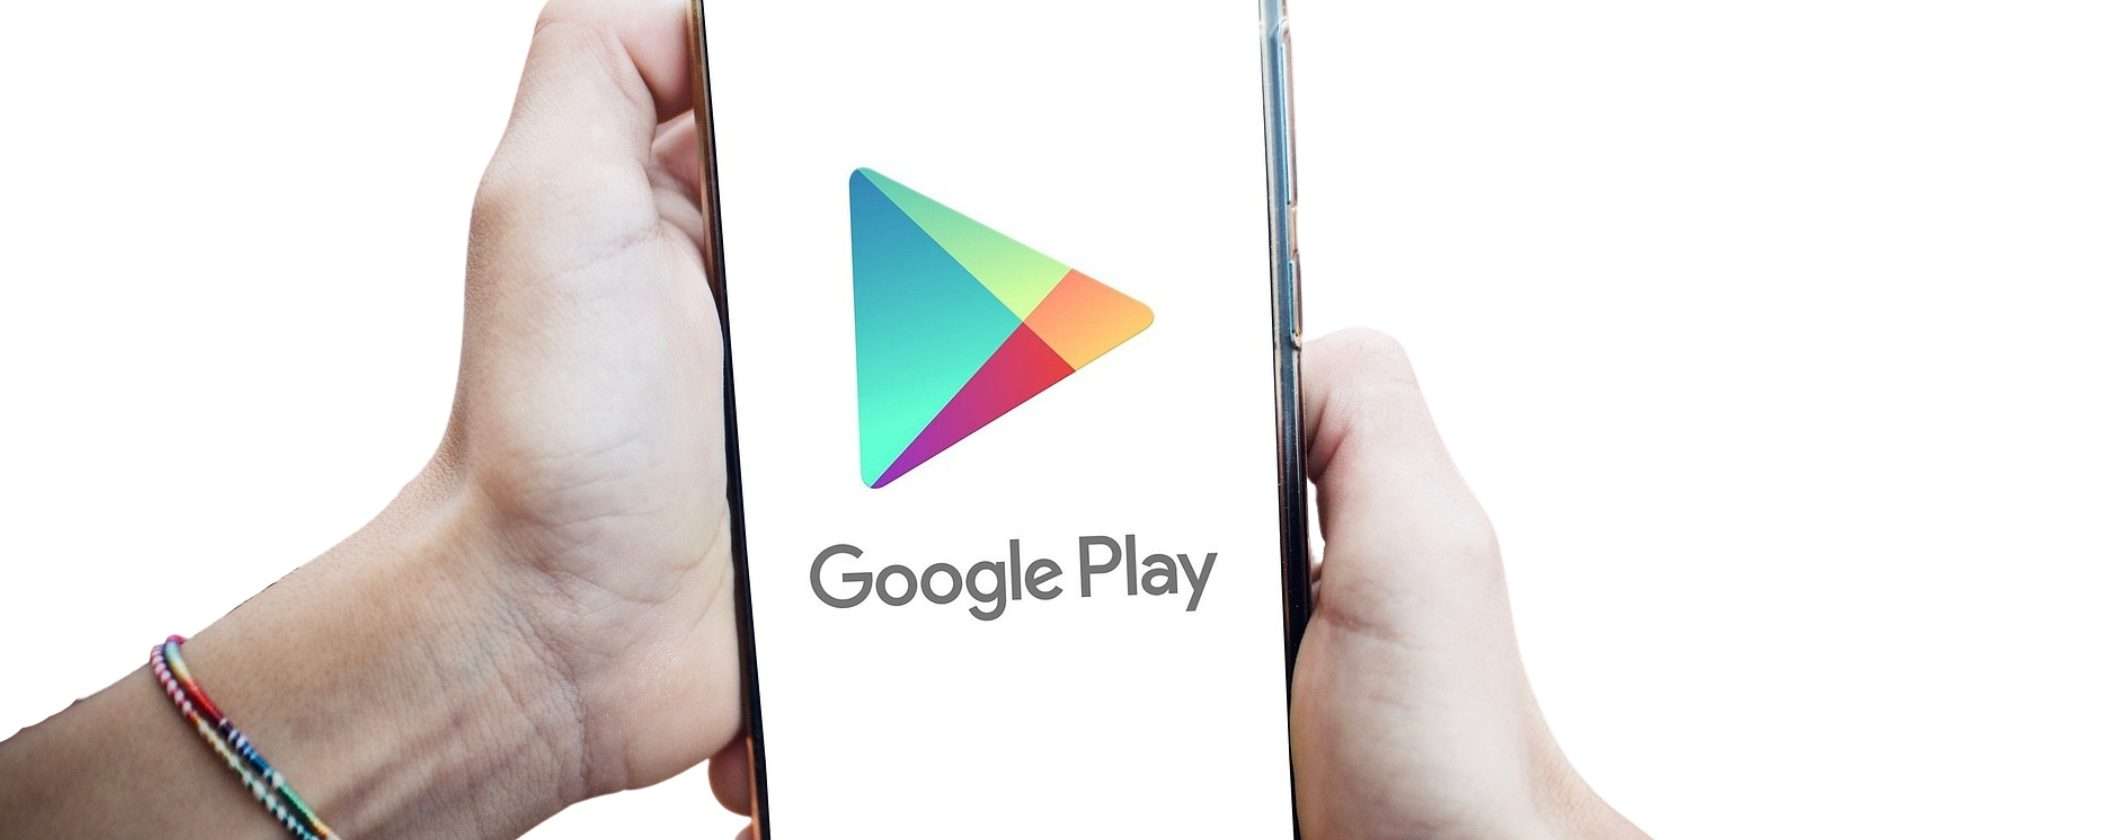 Google Play Store: trovate 2 app che distribuiscono trojan bancari